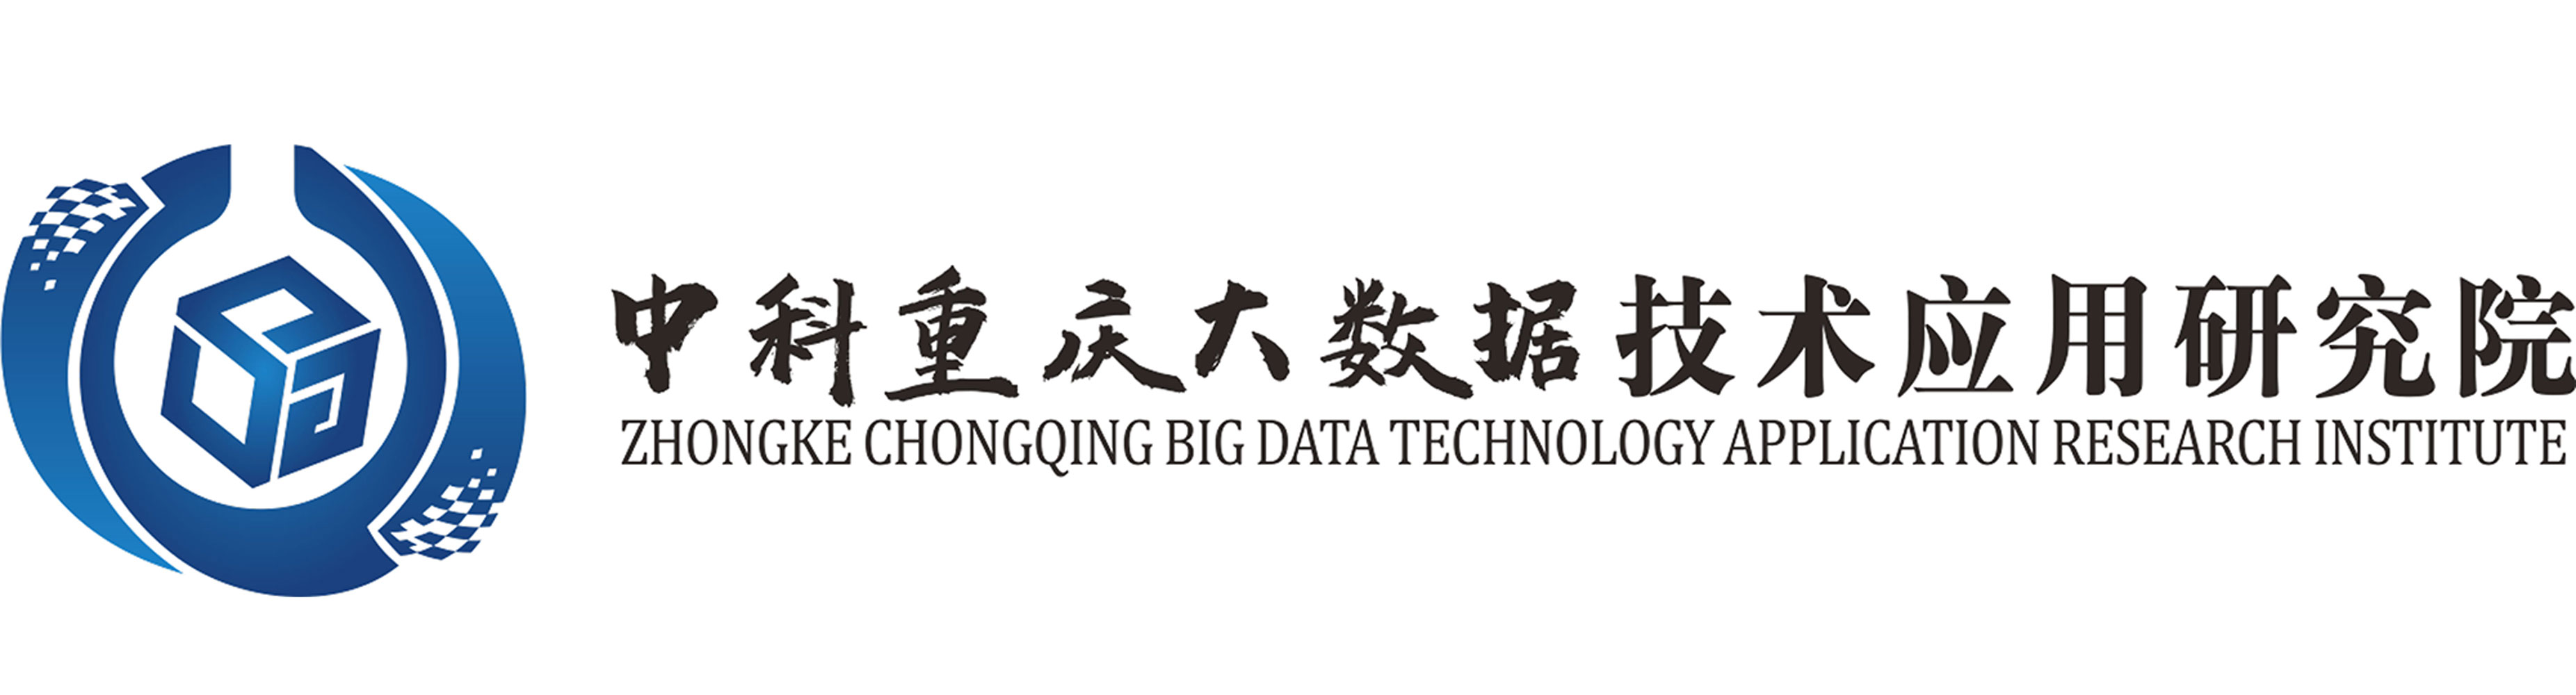 中科重庆大数据技术应用研究院